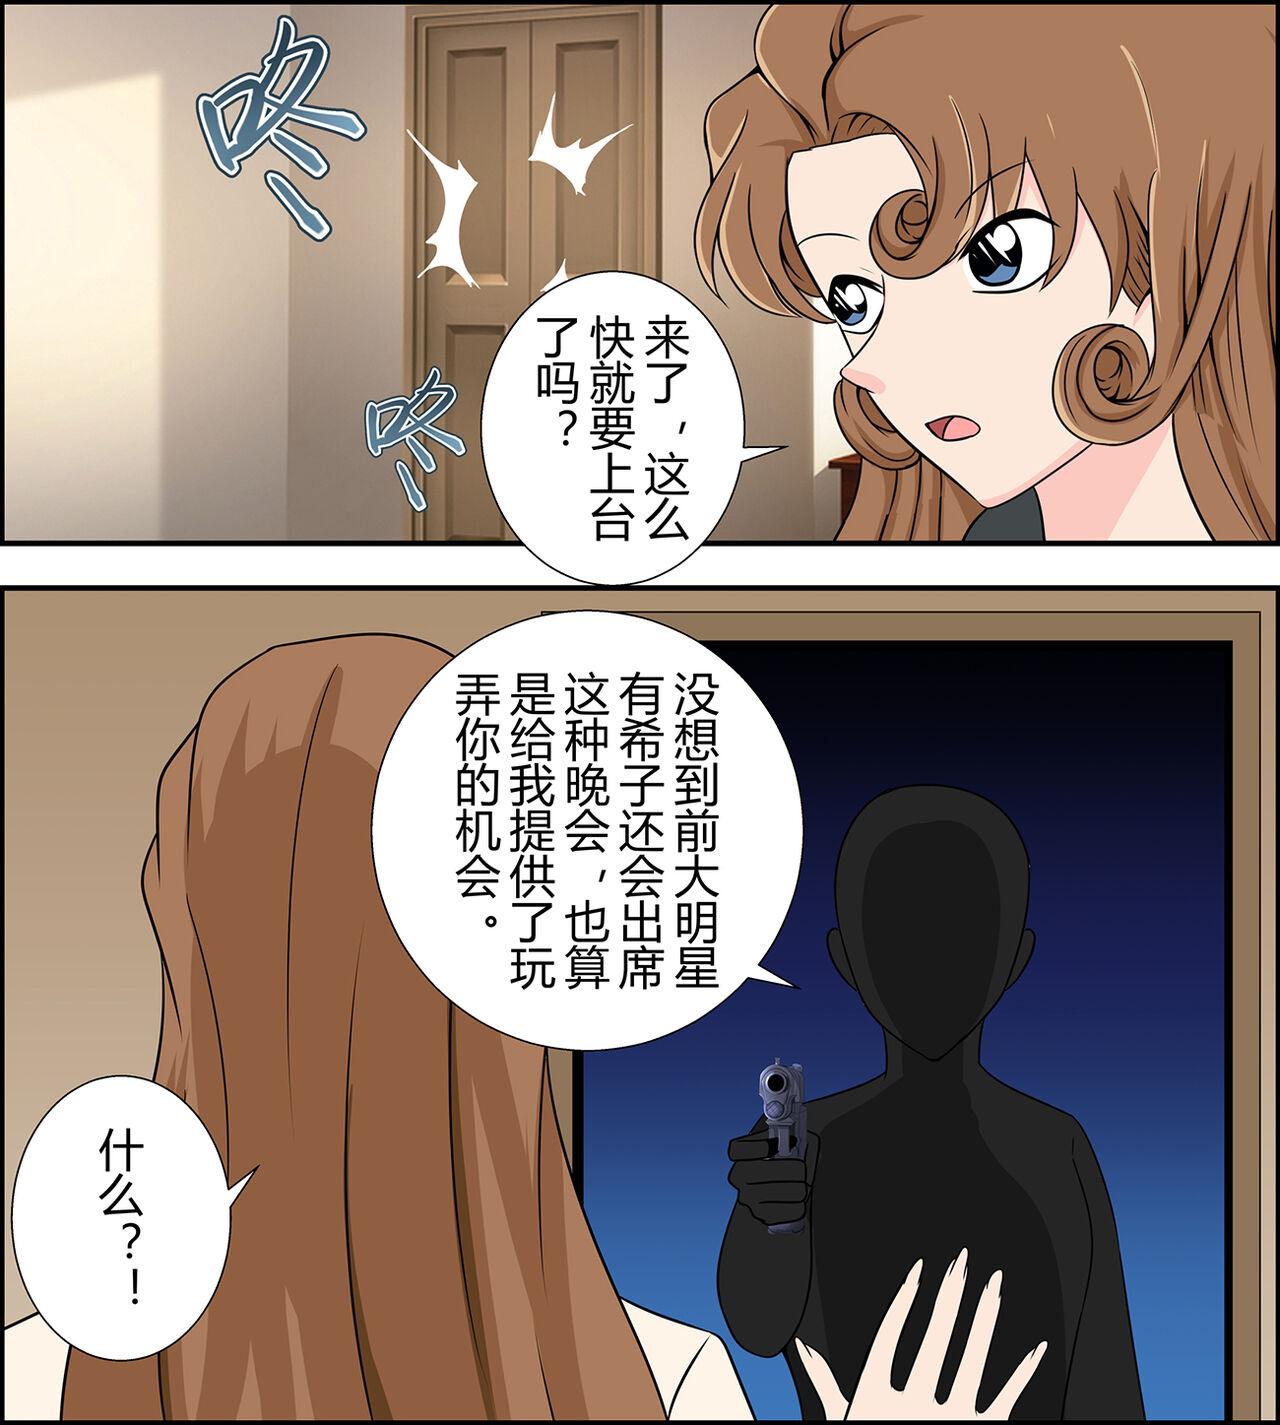 Yukiko kudo kidnapping case 2